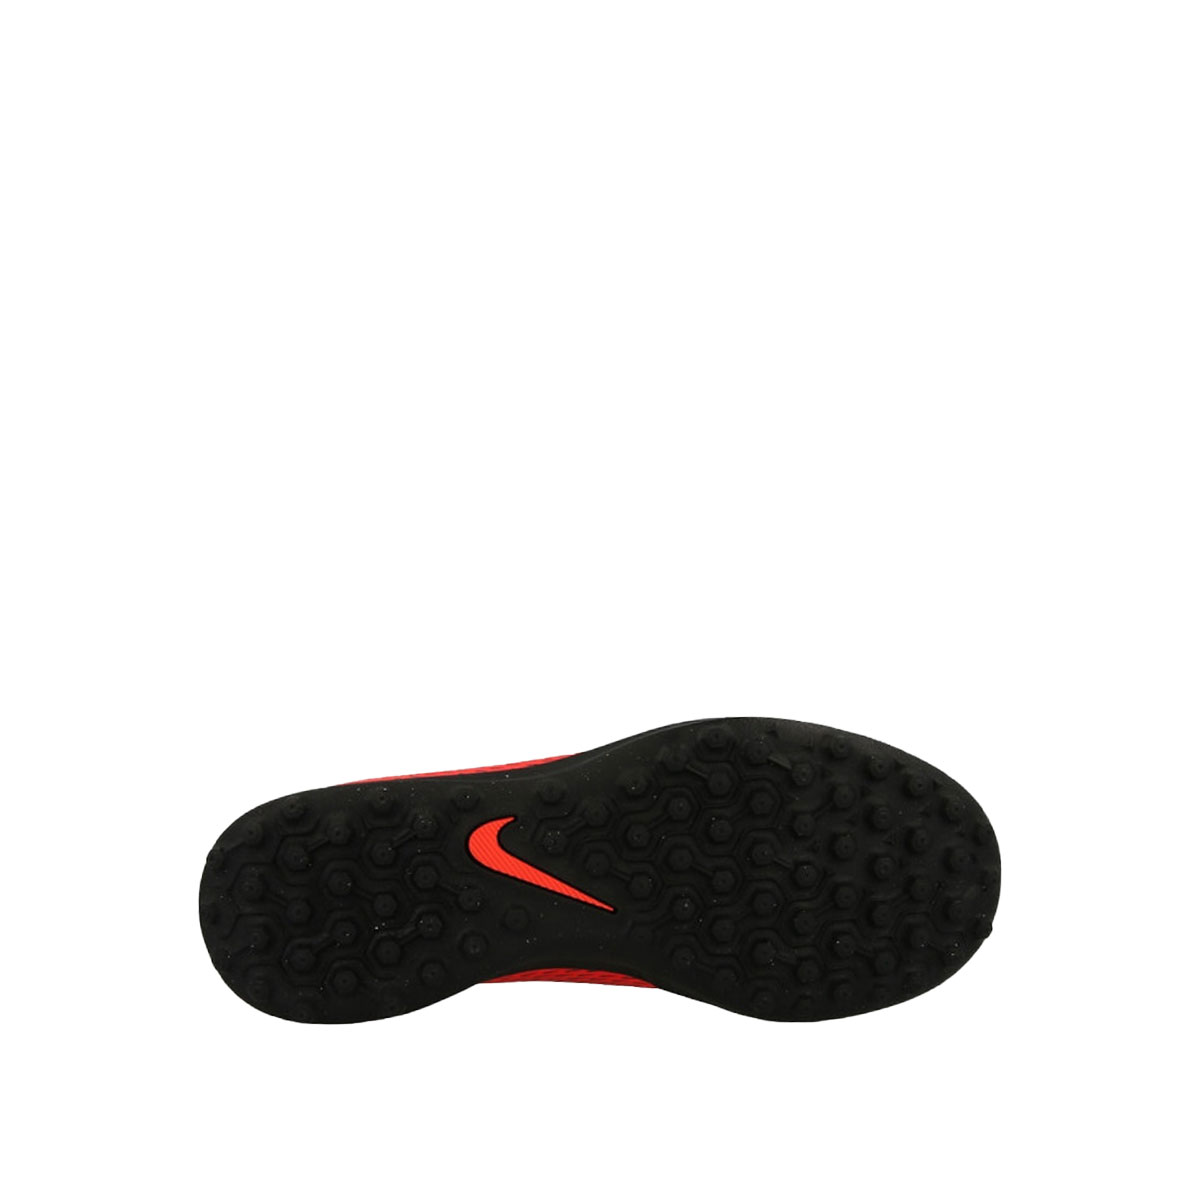 Nike Bravata II TF  TTR844440-601